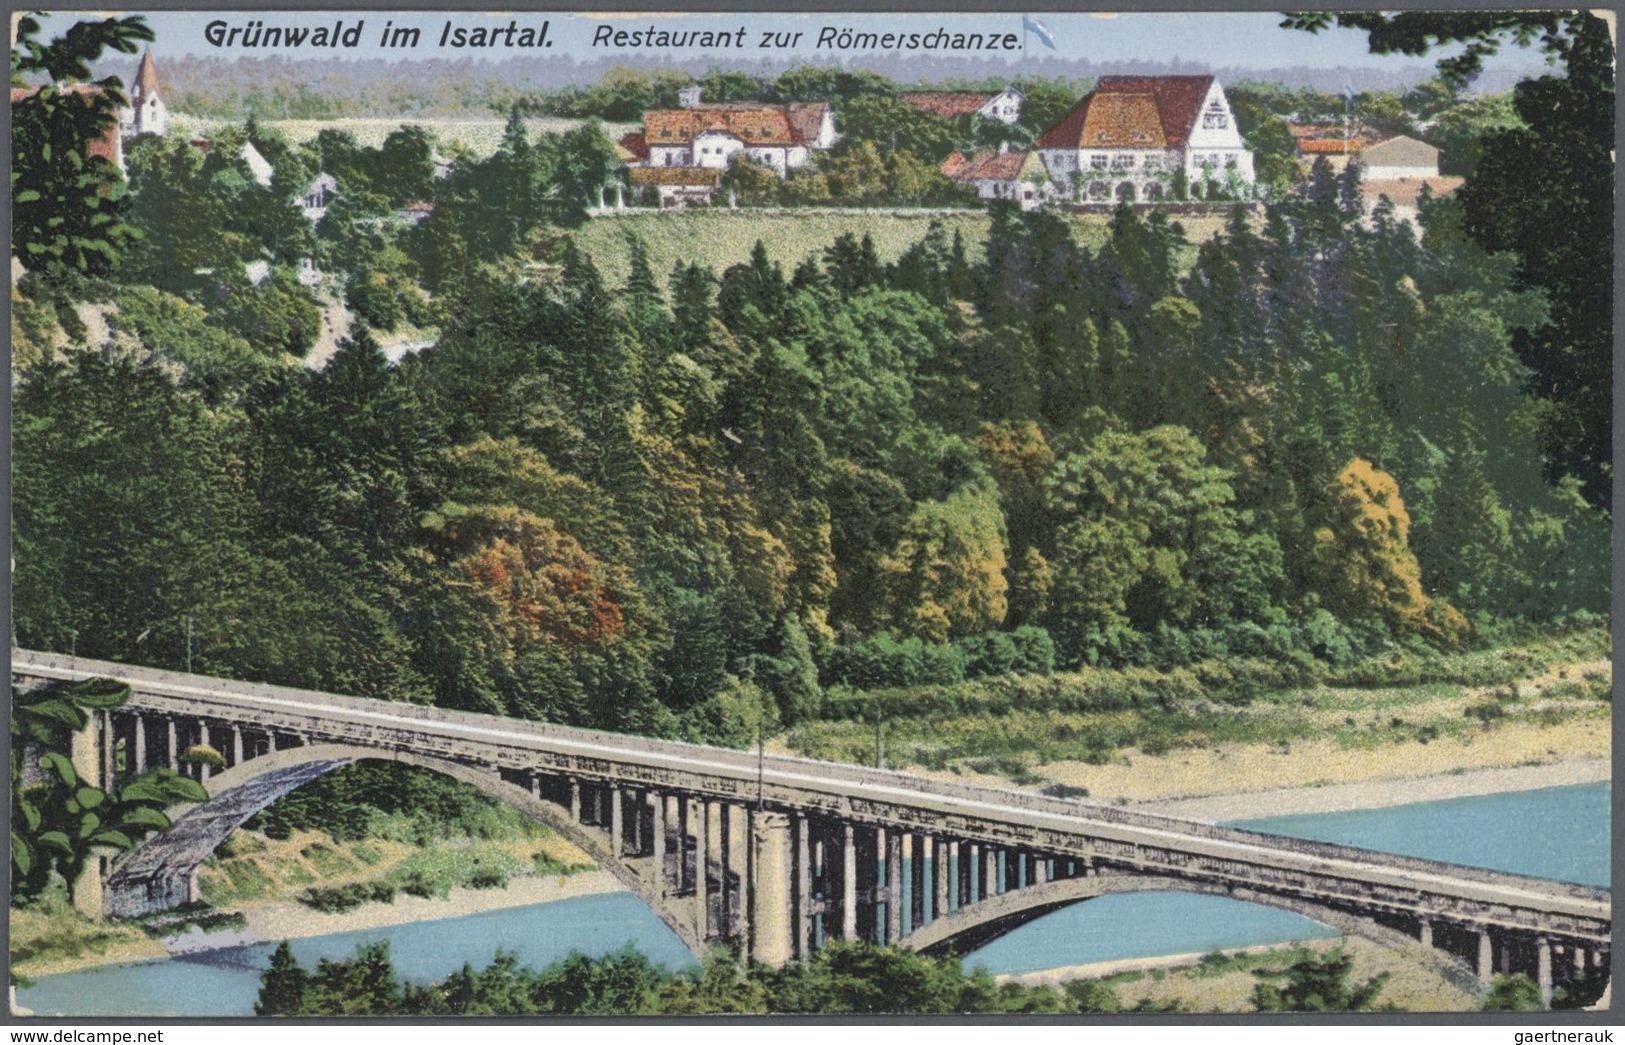 Ansichtskarten: Bayern: ISARTAL (alte PLZ 802), mit u.a. Baierbrunn, Schäftlarn, Icking, Grünwald, G